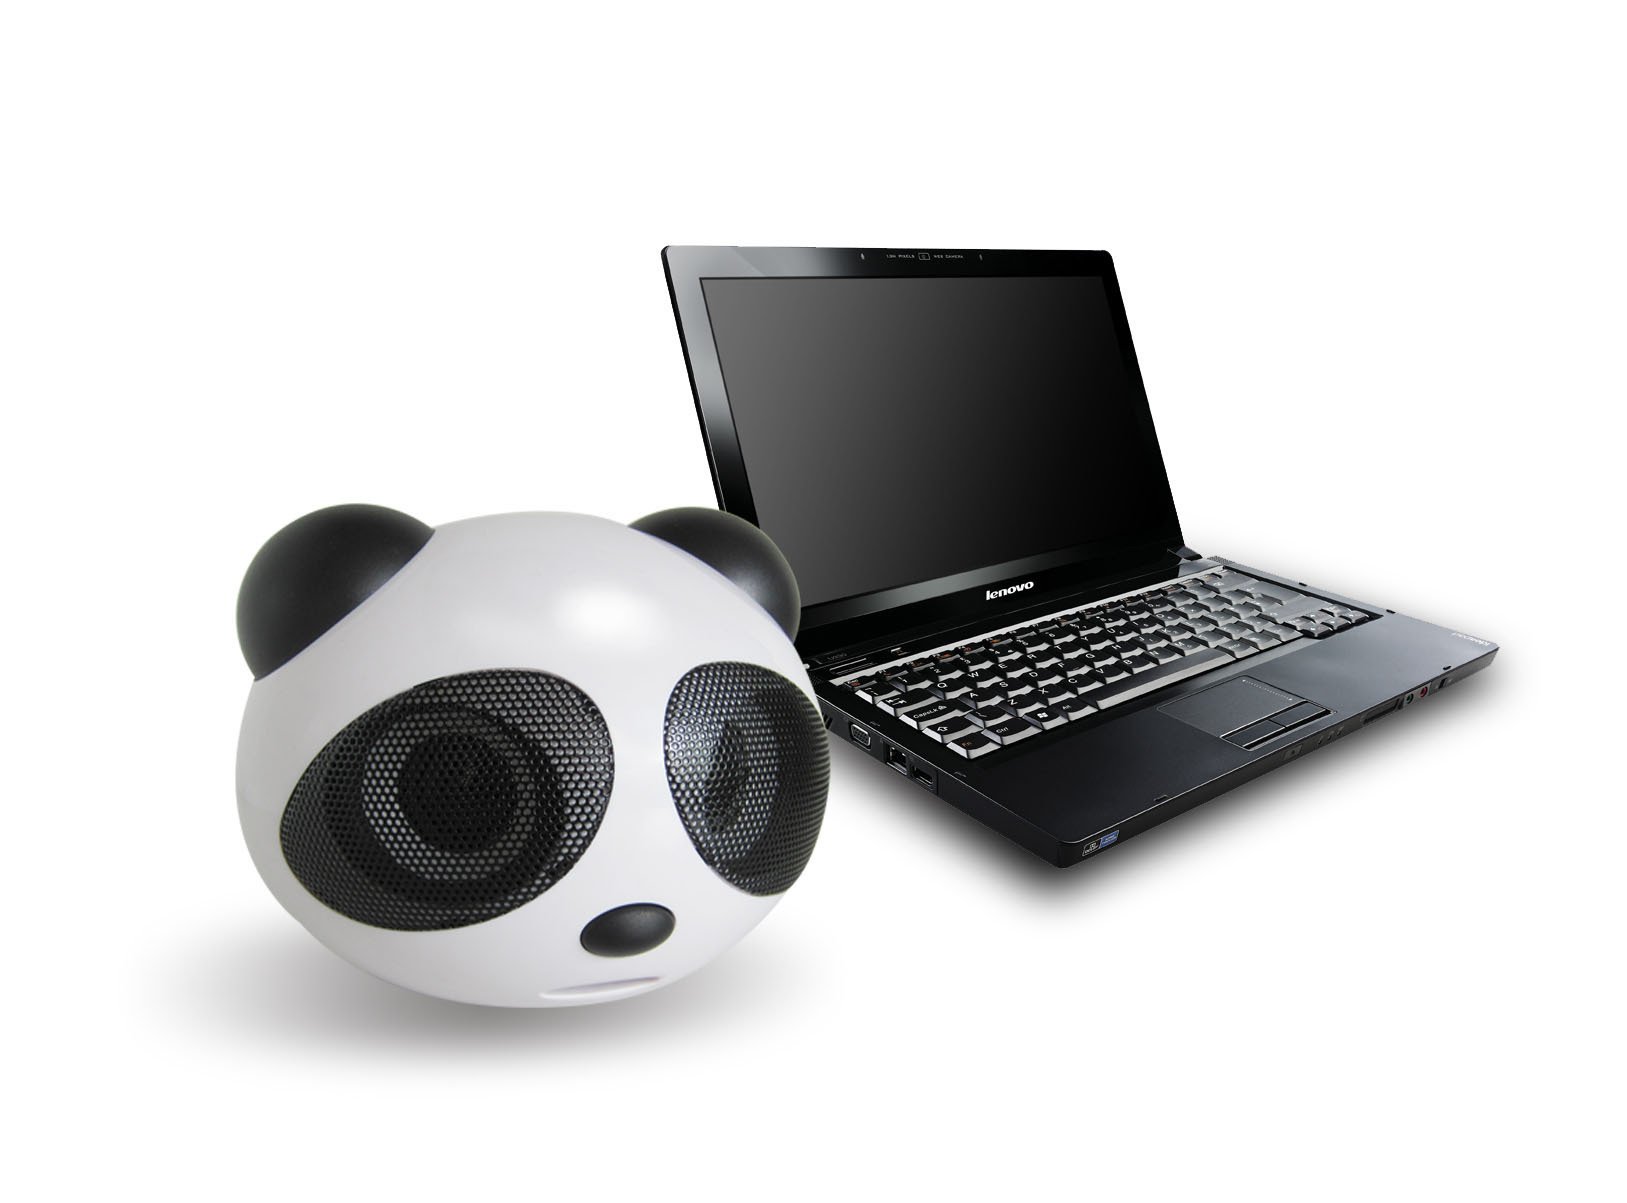 Loa nghe nhạc hình gấu trúc ngộ nghĩnh,Loa máy tính mini gấu trúc Panda để bàn cao cấp âm thanh chuẩn stereo chất lượng